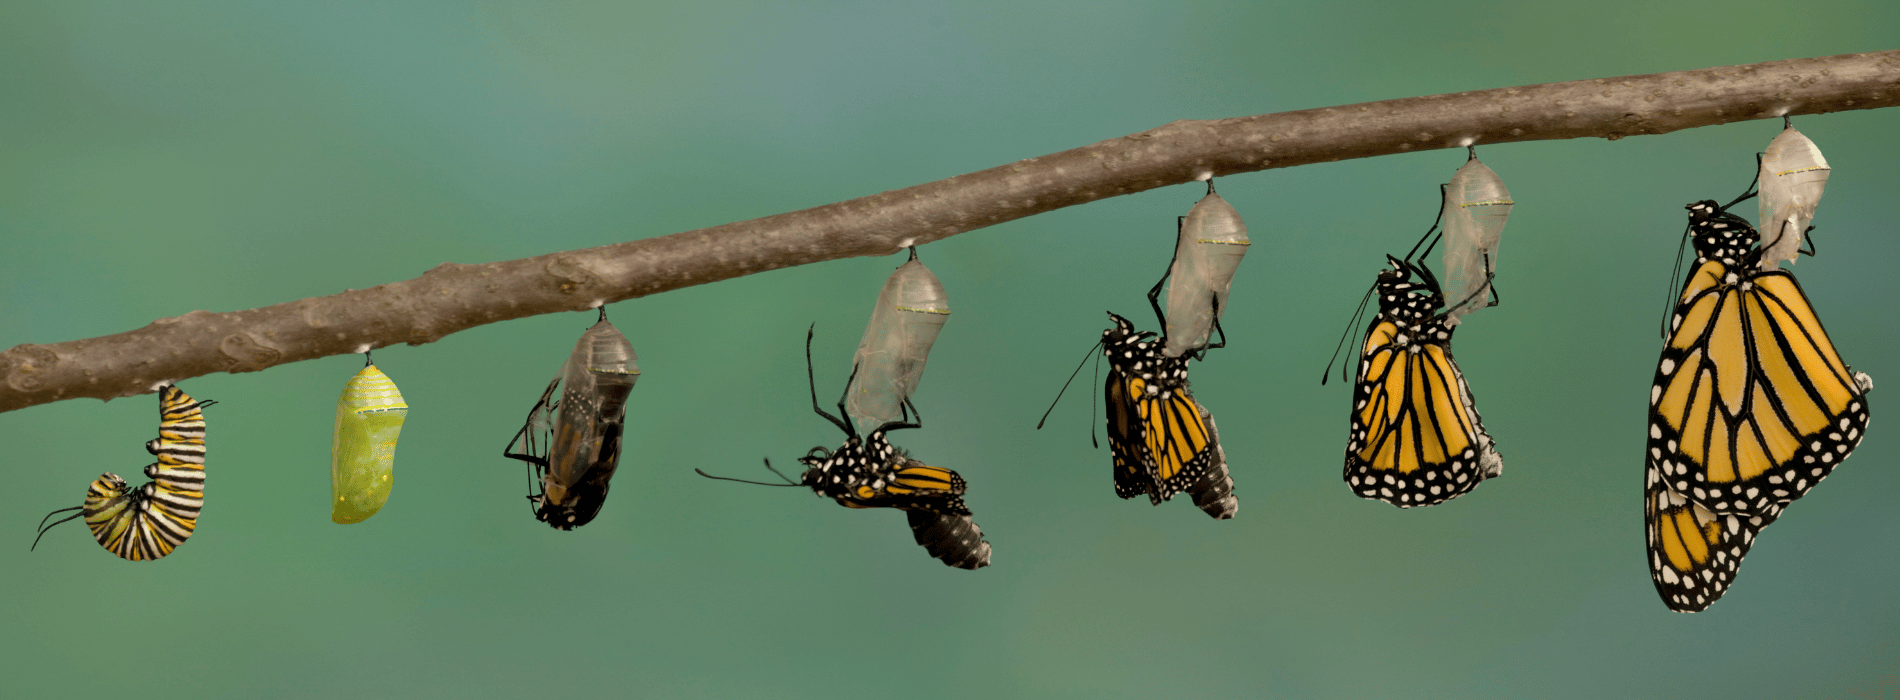 Ciclo de vida de la mariposa